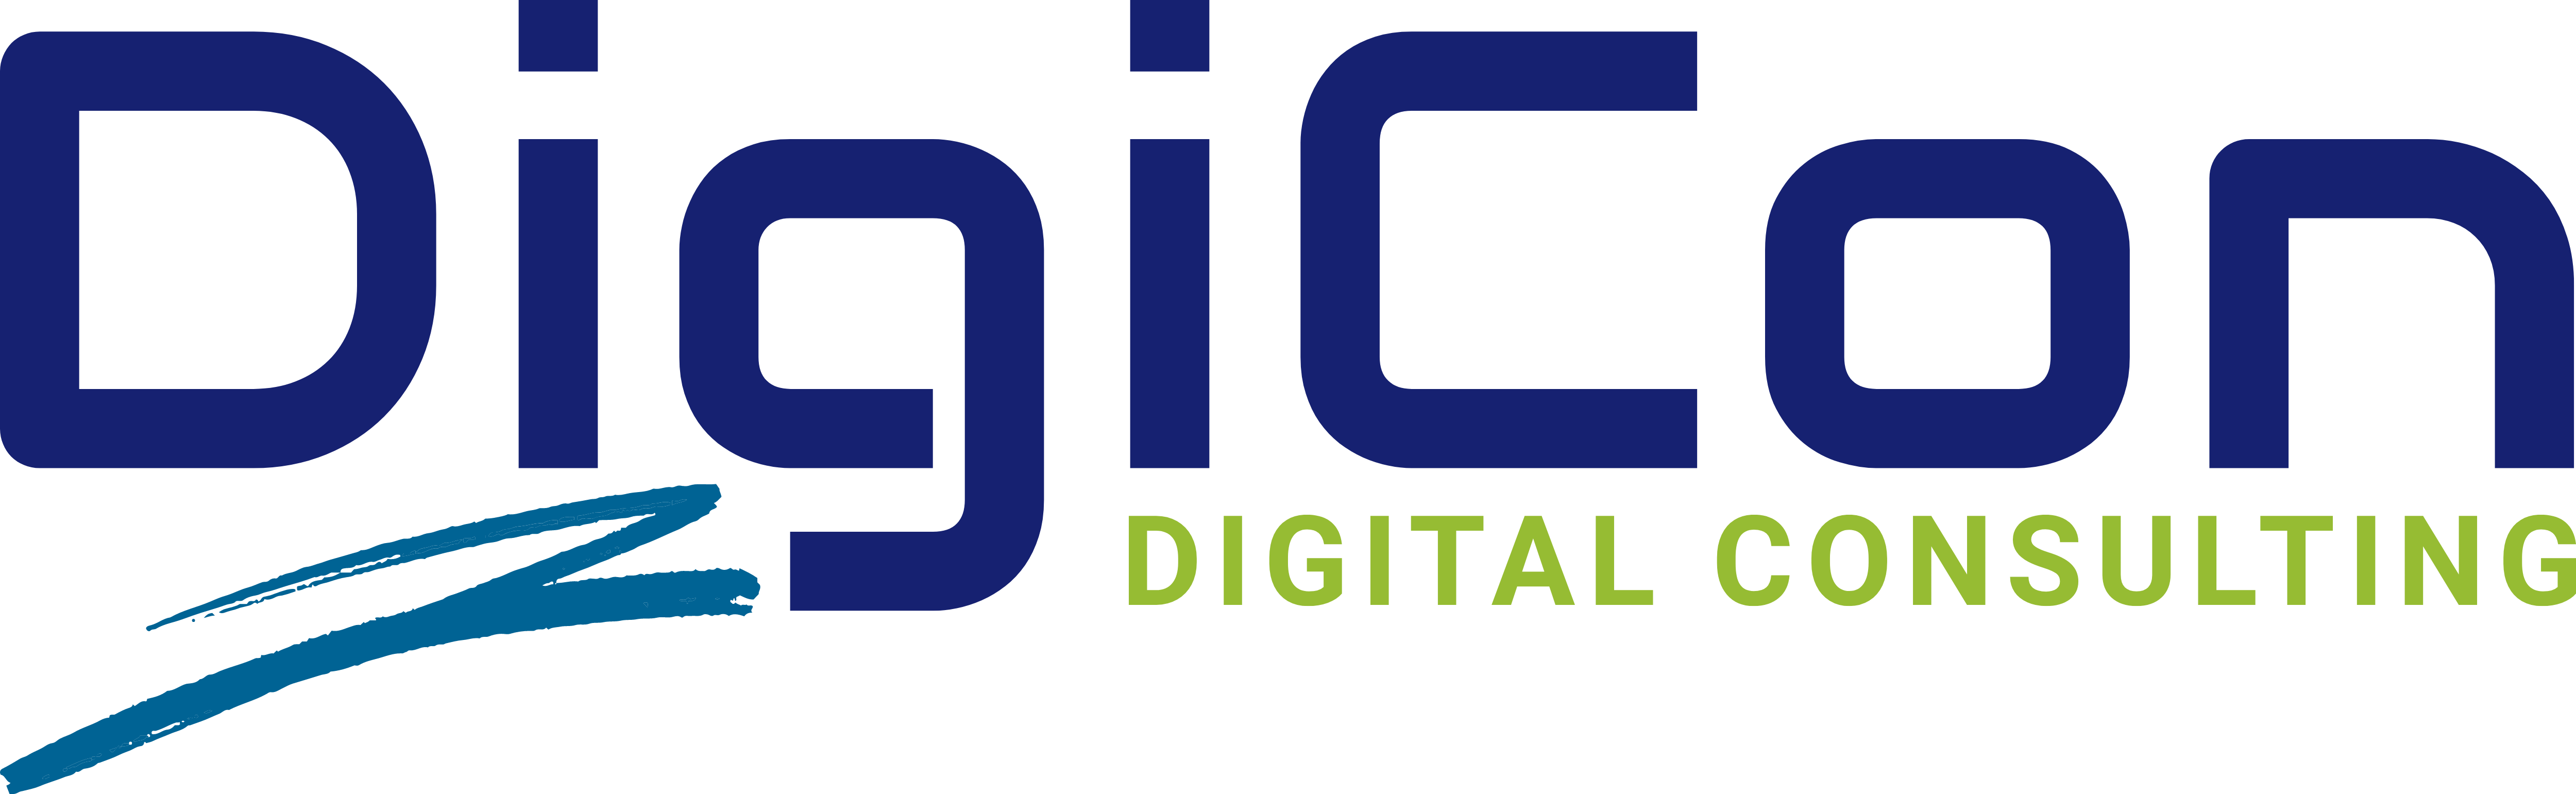 DigiCon | Digital-Consulting